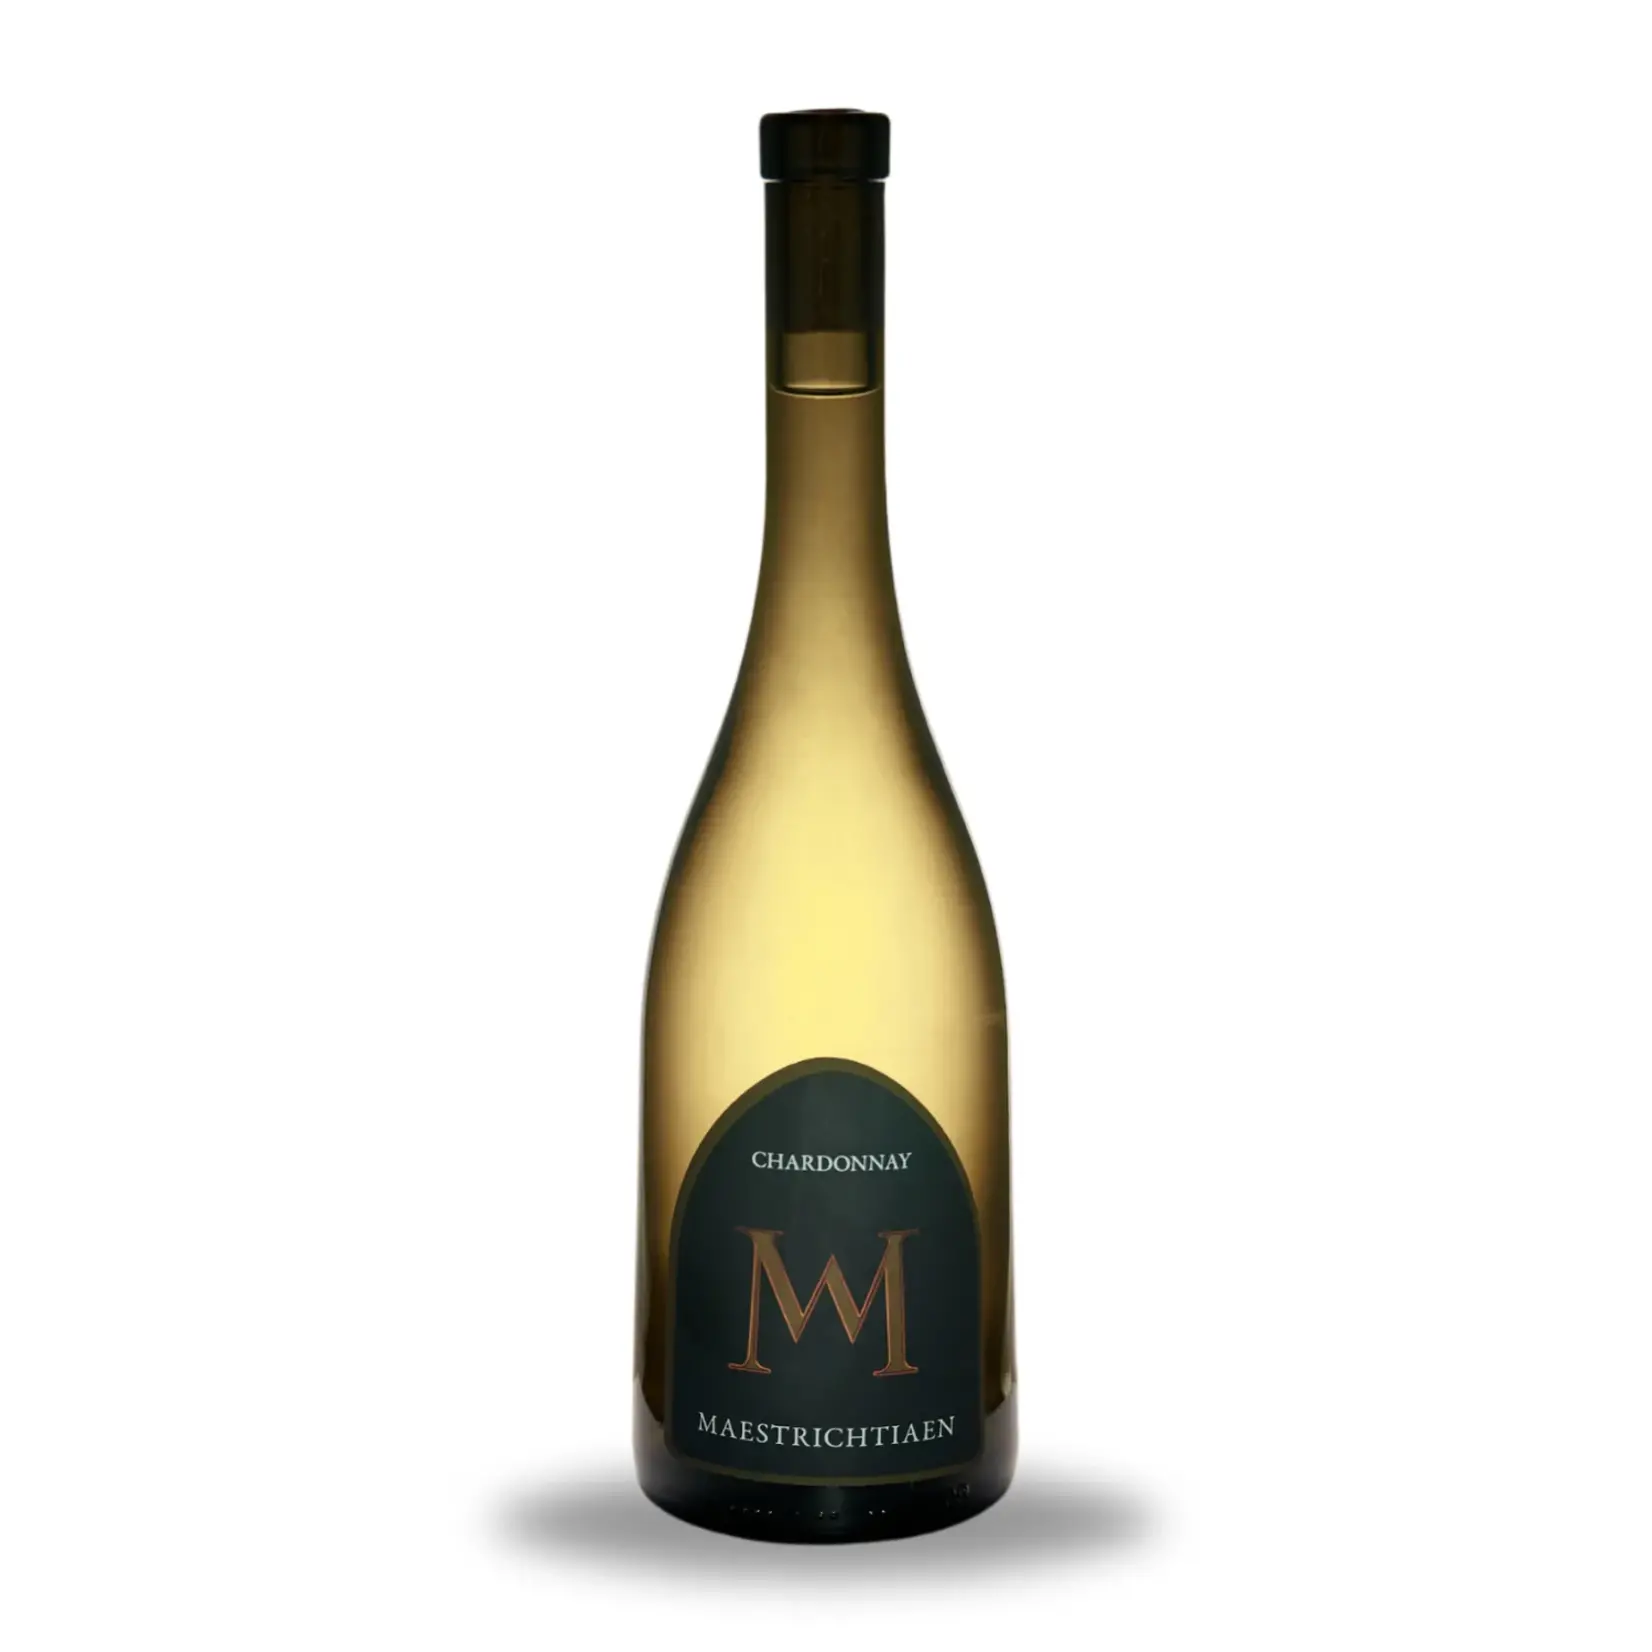 Wijnmakerij Maastricht Maestrichtiaen Chardonnay